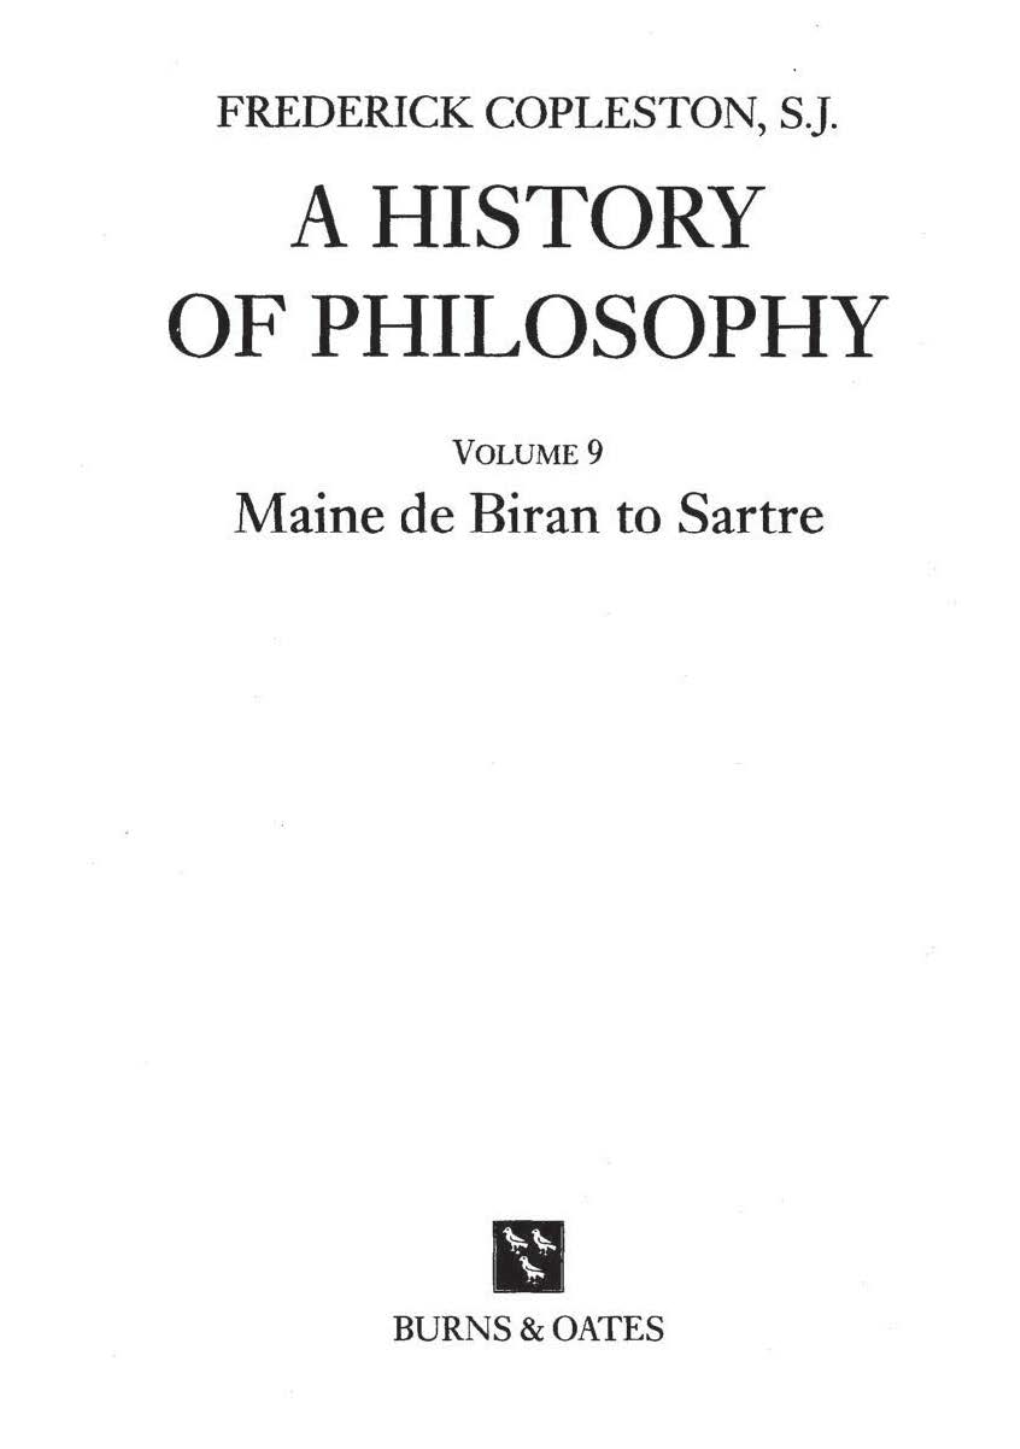 Maine De Biran to Sartre / Frederick Copleston, SJ